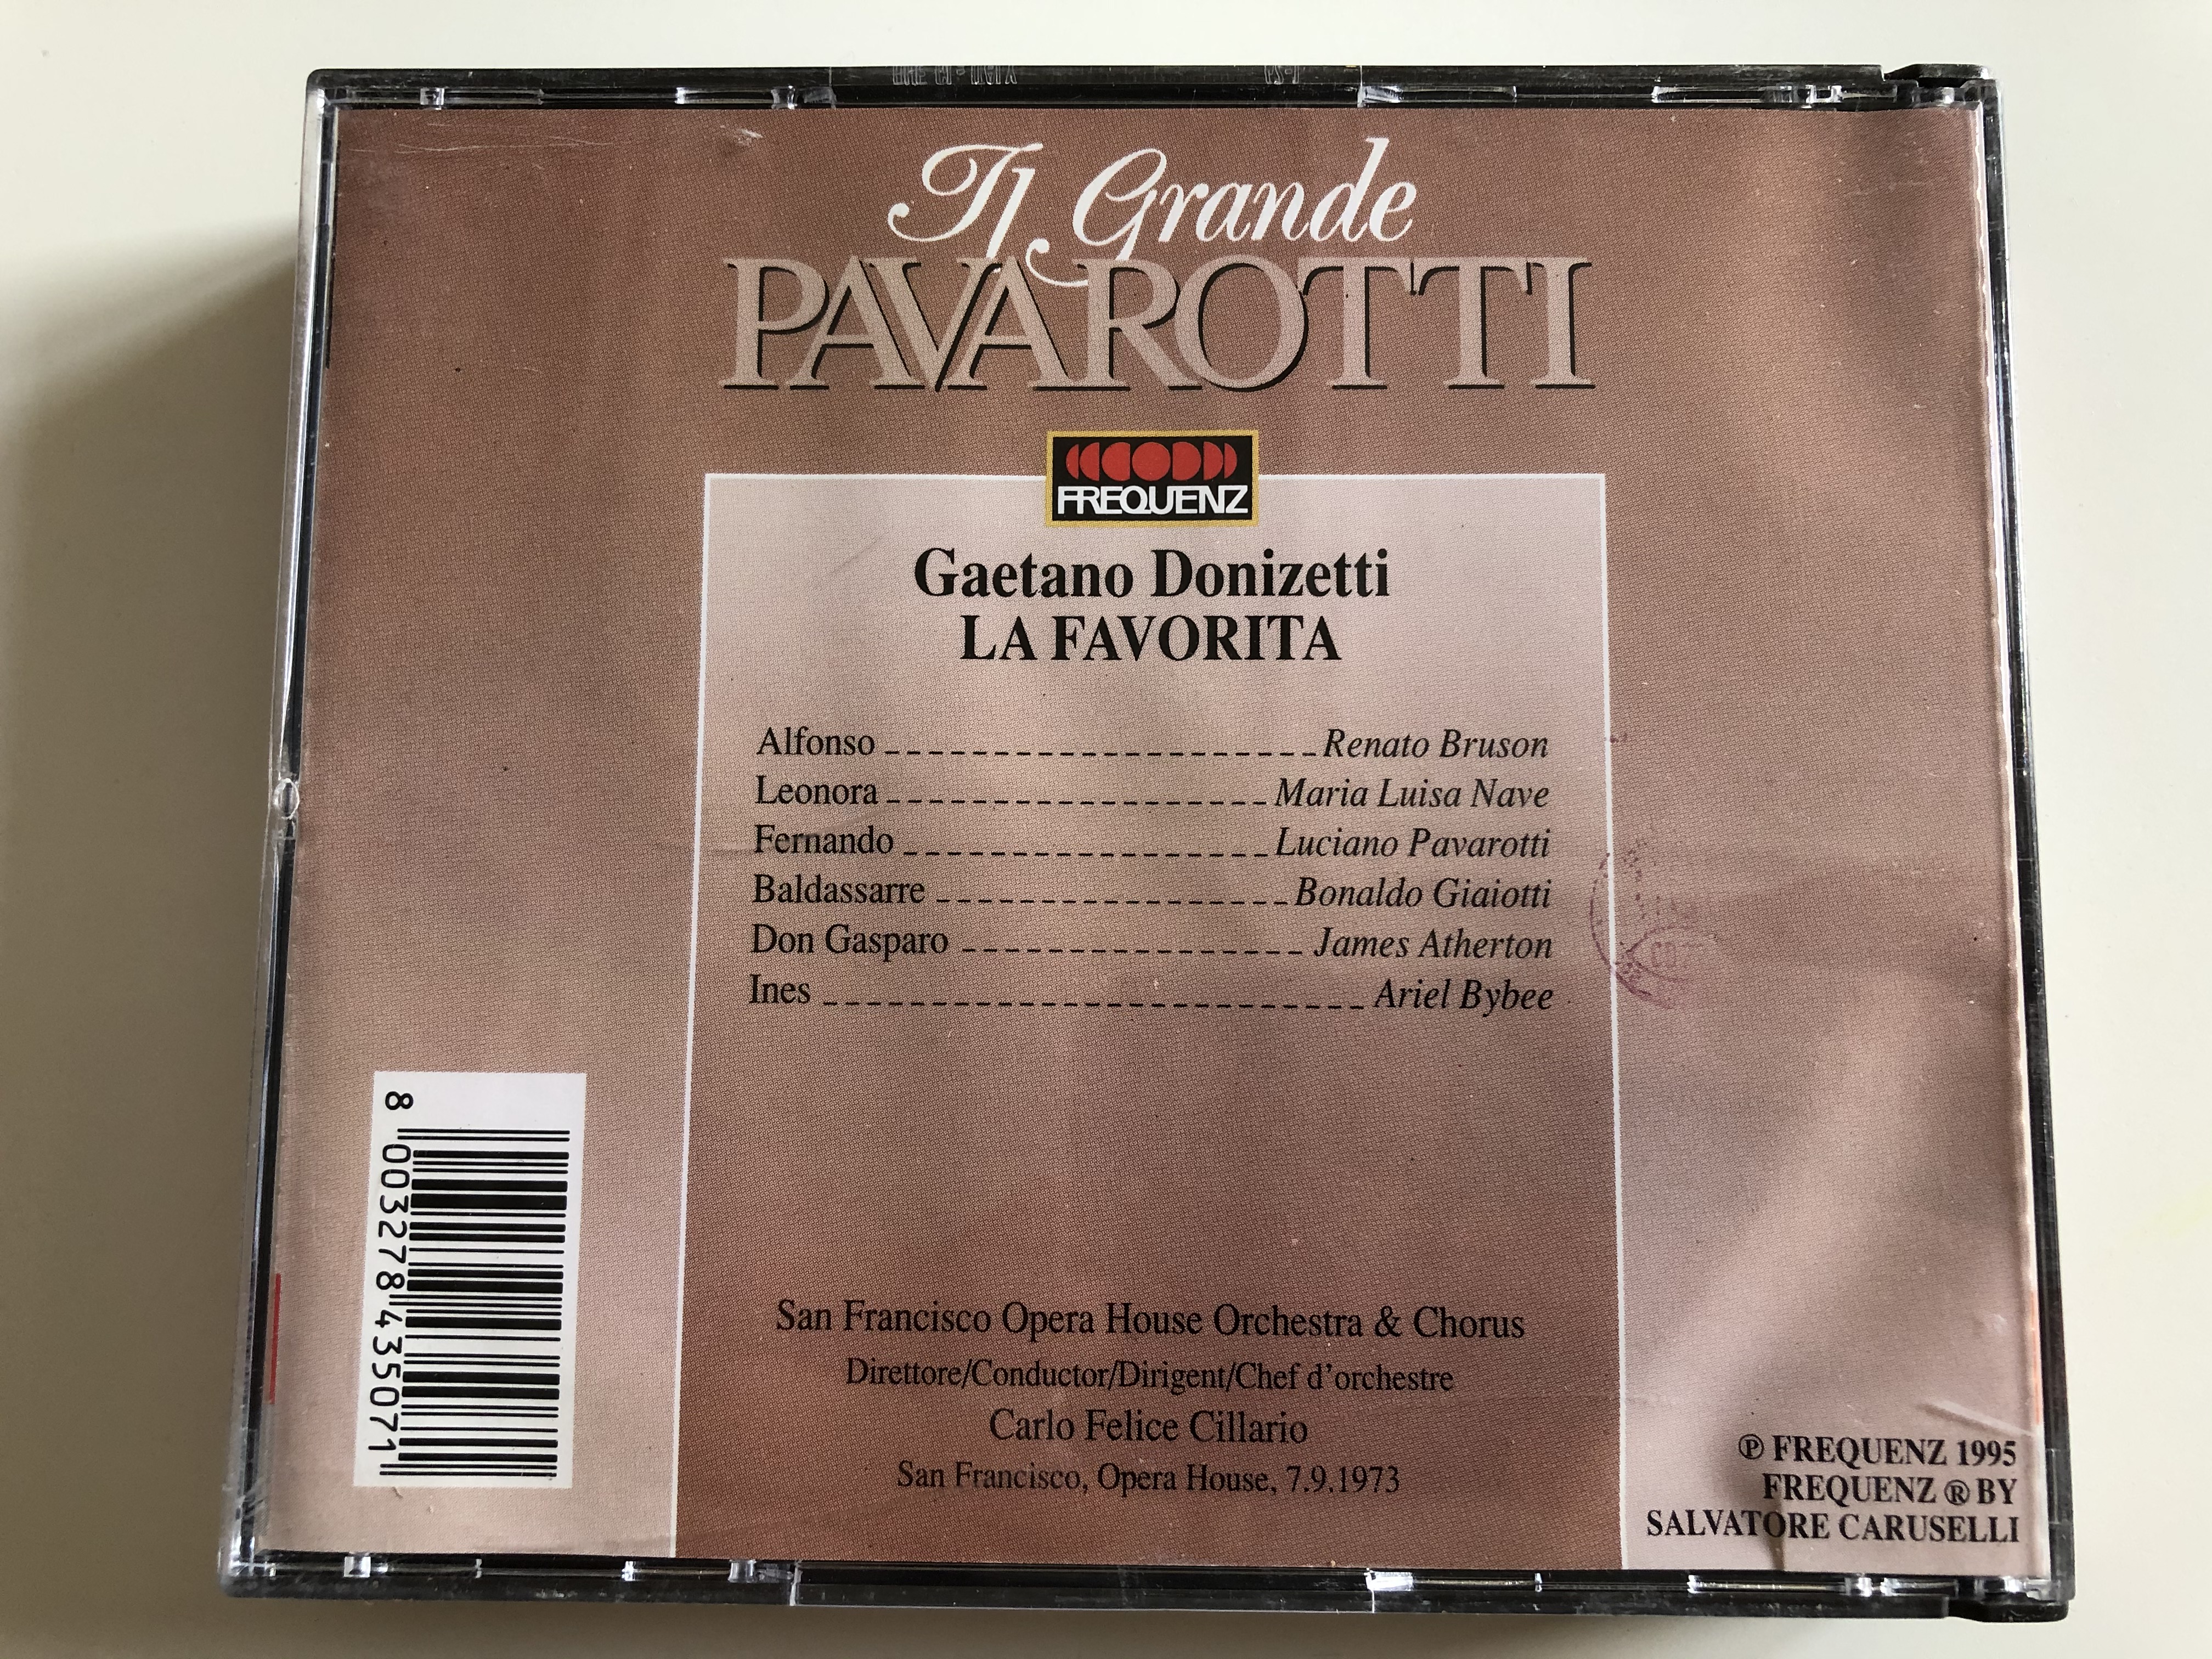 il-grande-pavarotti-donizetti-la-favorita-luciano-pavarotti-maria-luisa-nave-renato-bruson-bonaldo-giaiotti-san-francisco-opera-house-orchestra-chorus-carlo-felice-cillario-frequenz-5-.jpg